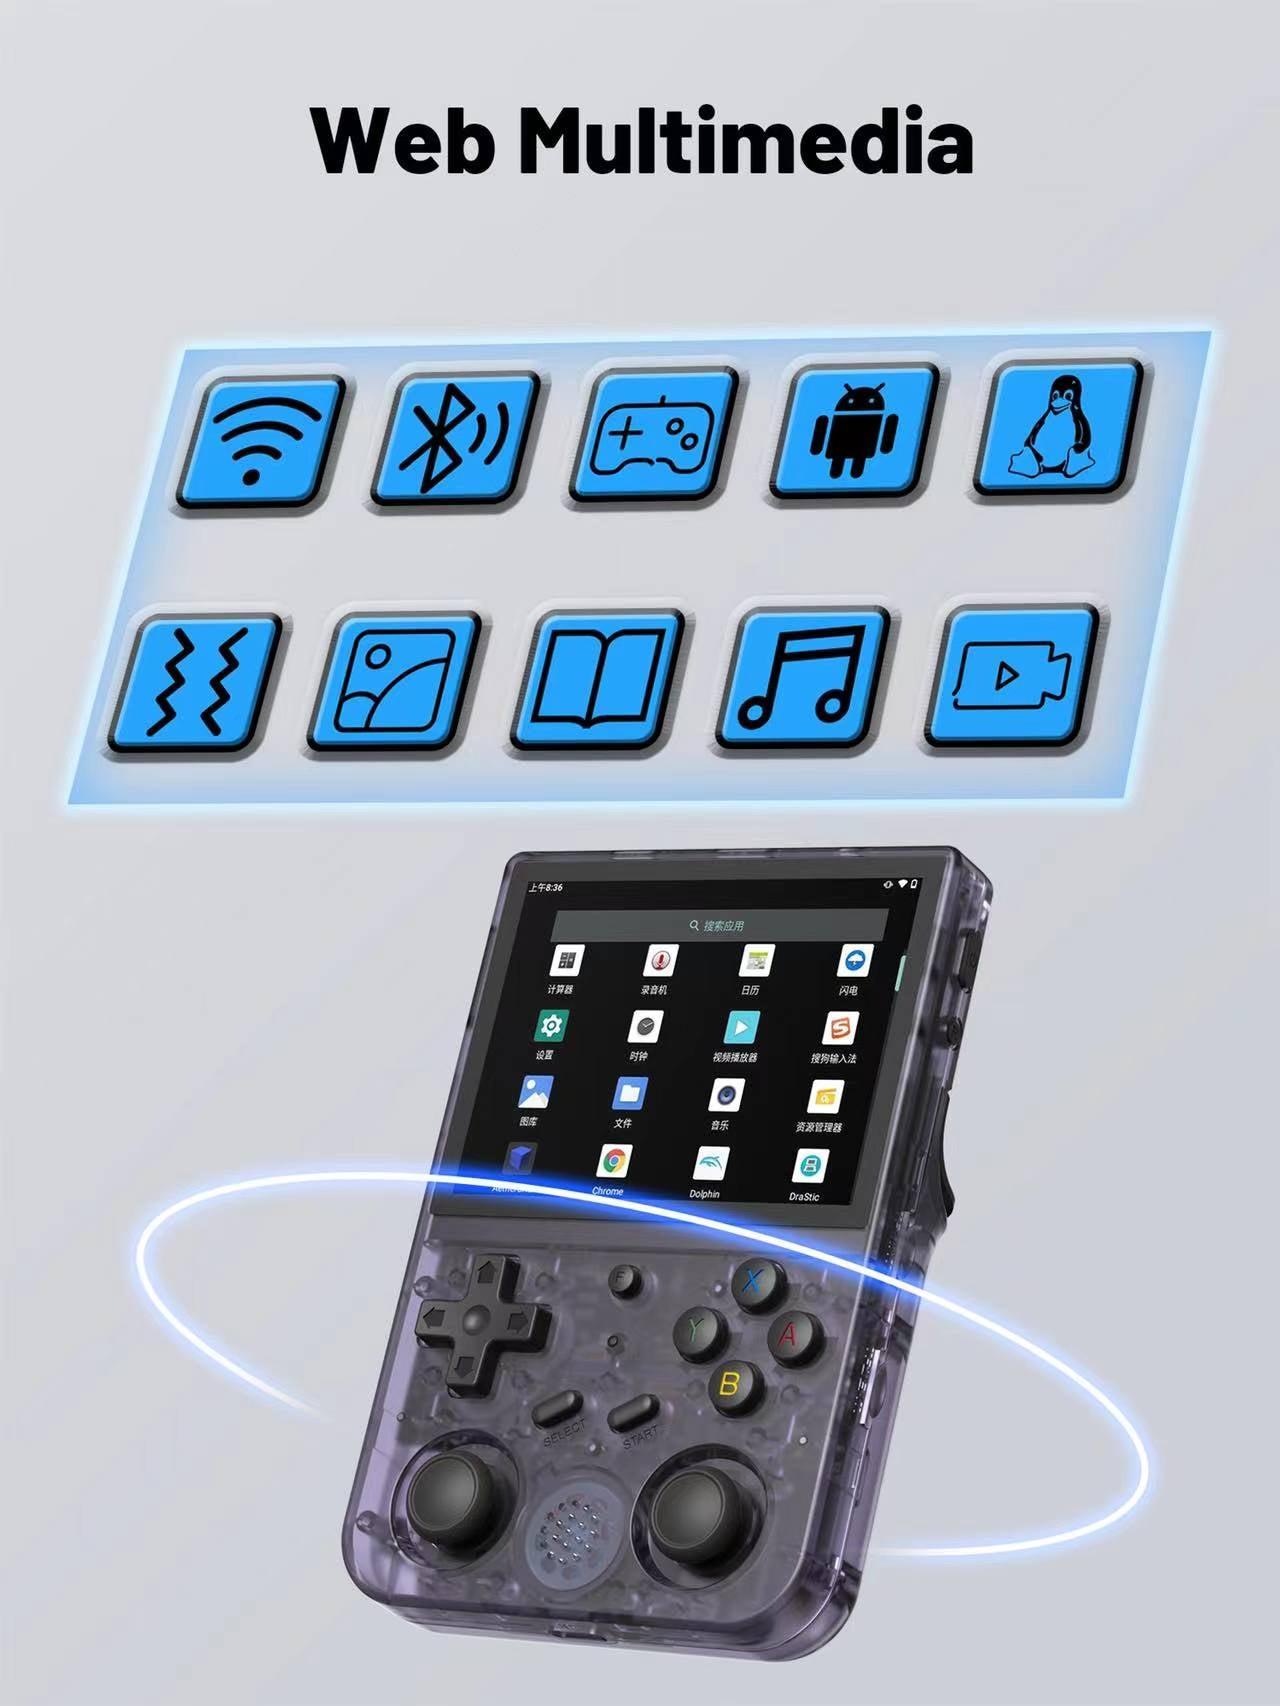 جهاز ألعاب محمول باليد قيمنج كونسل ريترو جرين 2600 مللي أمبير Green Lion GP Pro Handheld Game Console - cG9zdDo5NzA3MTc=